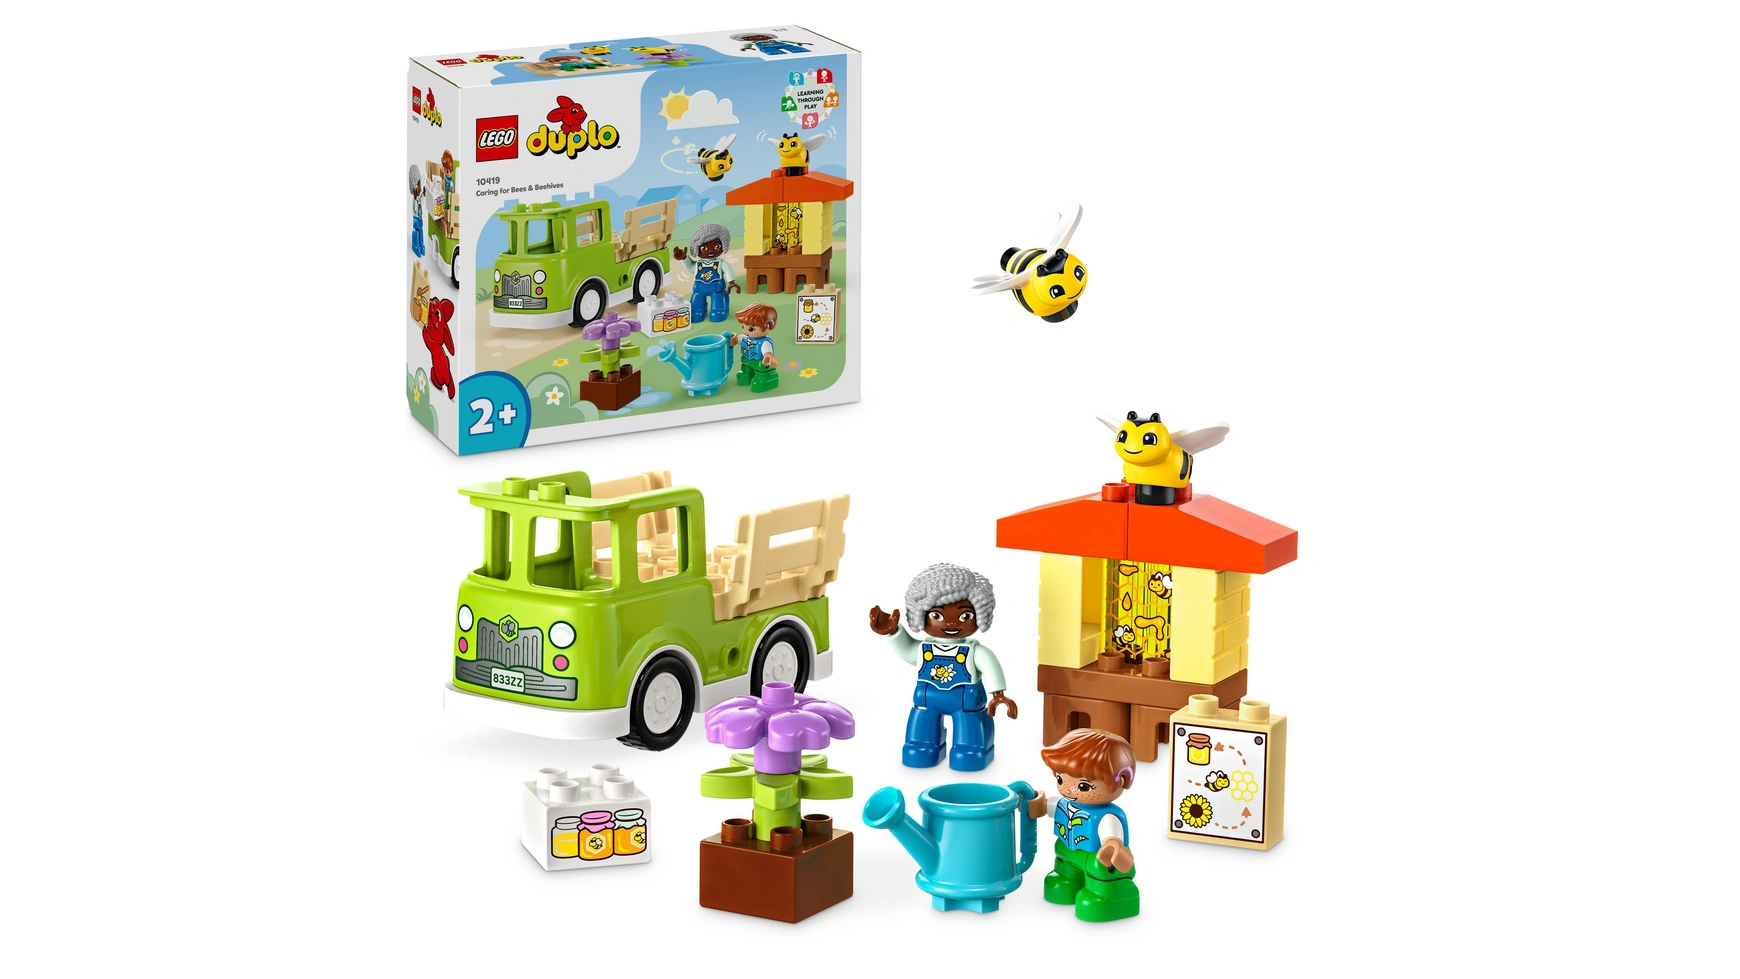 Lego DUPLO Town Пчеловодство и ульи, игрушки для животных для детей от 2 лет lego duplo экскаватор и грузовик креативная игрушка для детей от 2 лет и старше